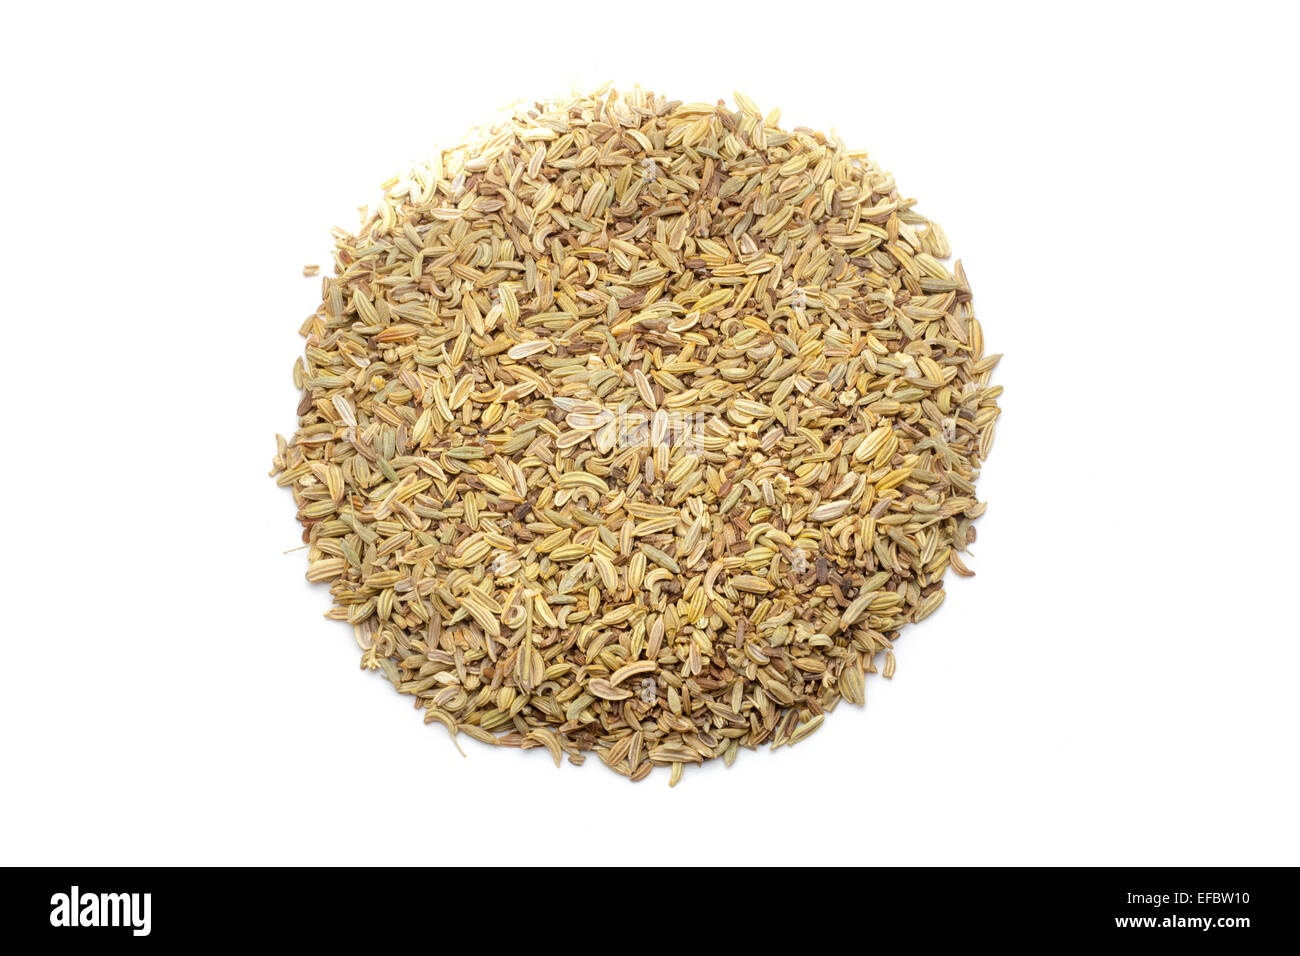 Pile of cumin seeds Stock Photo